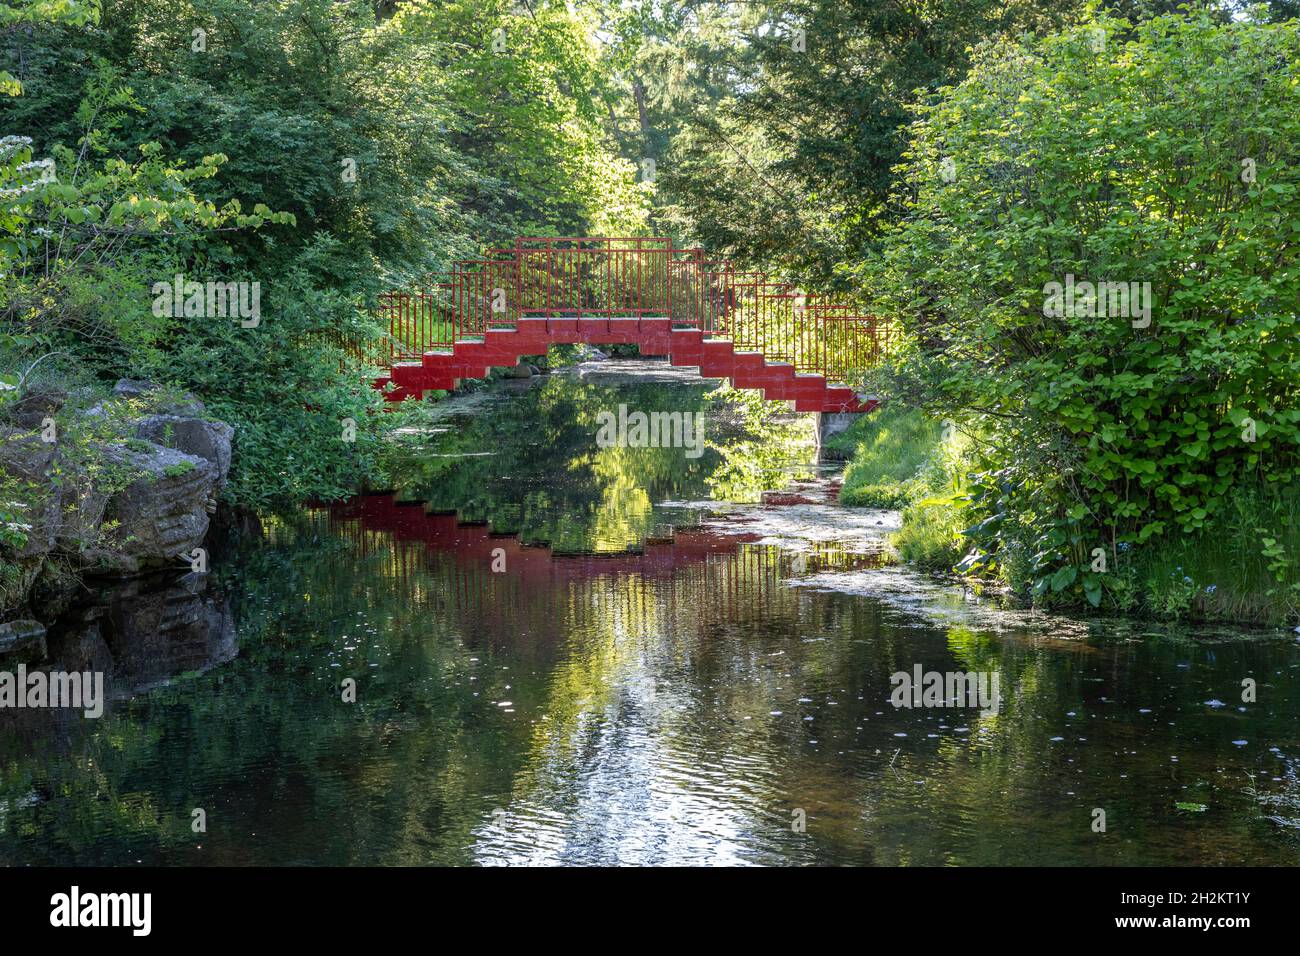 Midland, Michigan - il ponte rosso presso i Dow Gardens, un giardino botanico di 110 acri. Ora meta turistica popolare, era originariamente la casa di Herbe Foto Stock